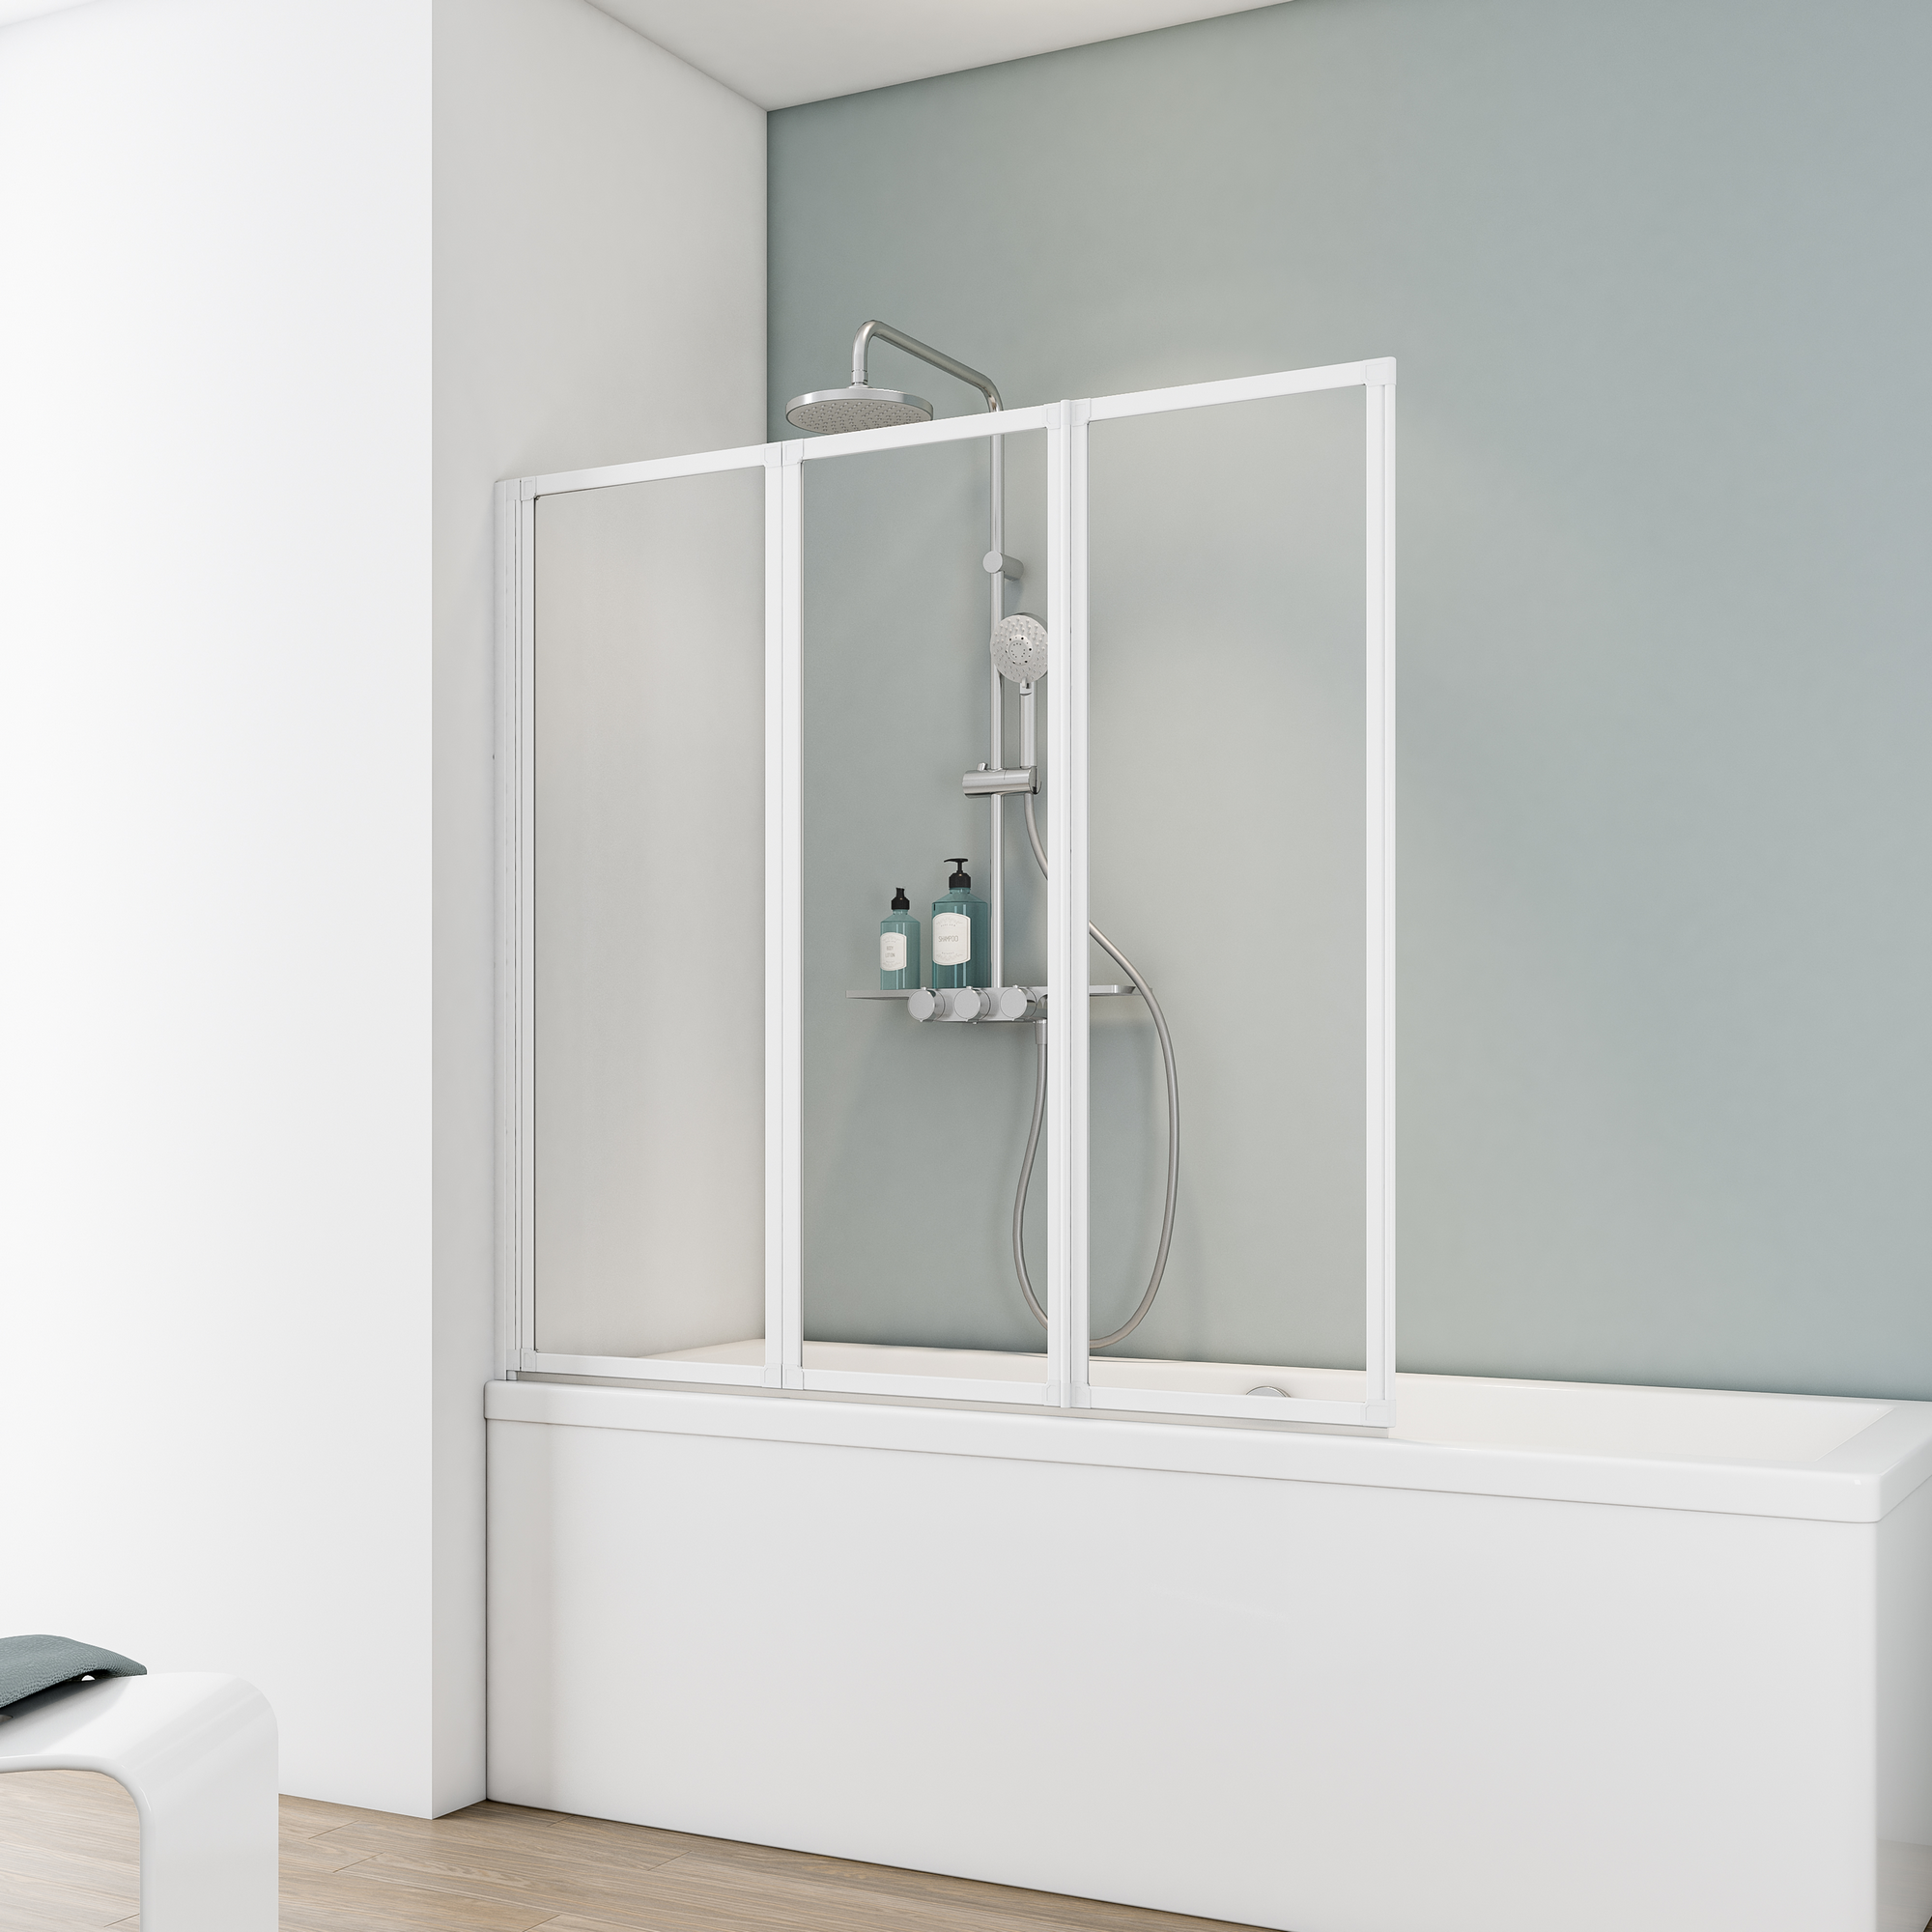 Badewannenfaltwand 'Komfort', vollgerahmt, weiß, 127 x 121 cm, 3-teilig + product picture